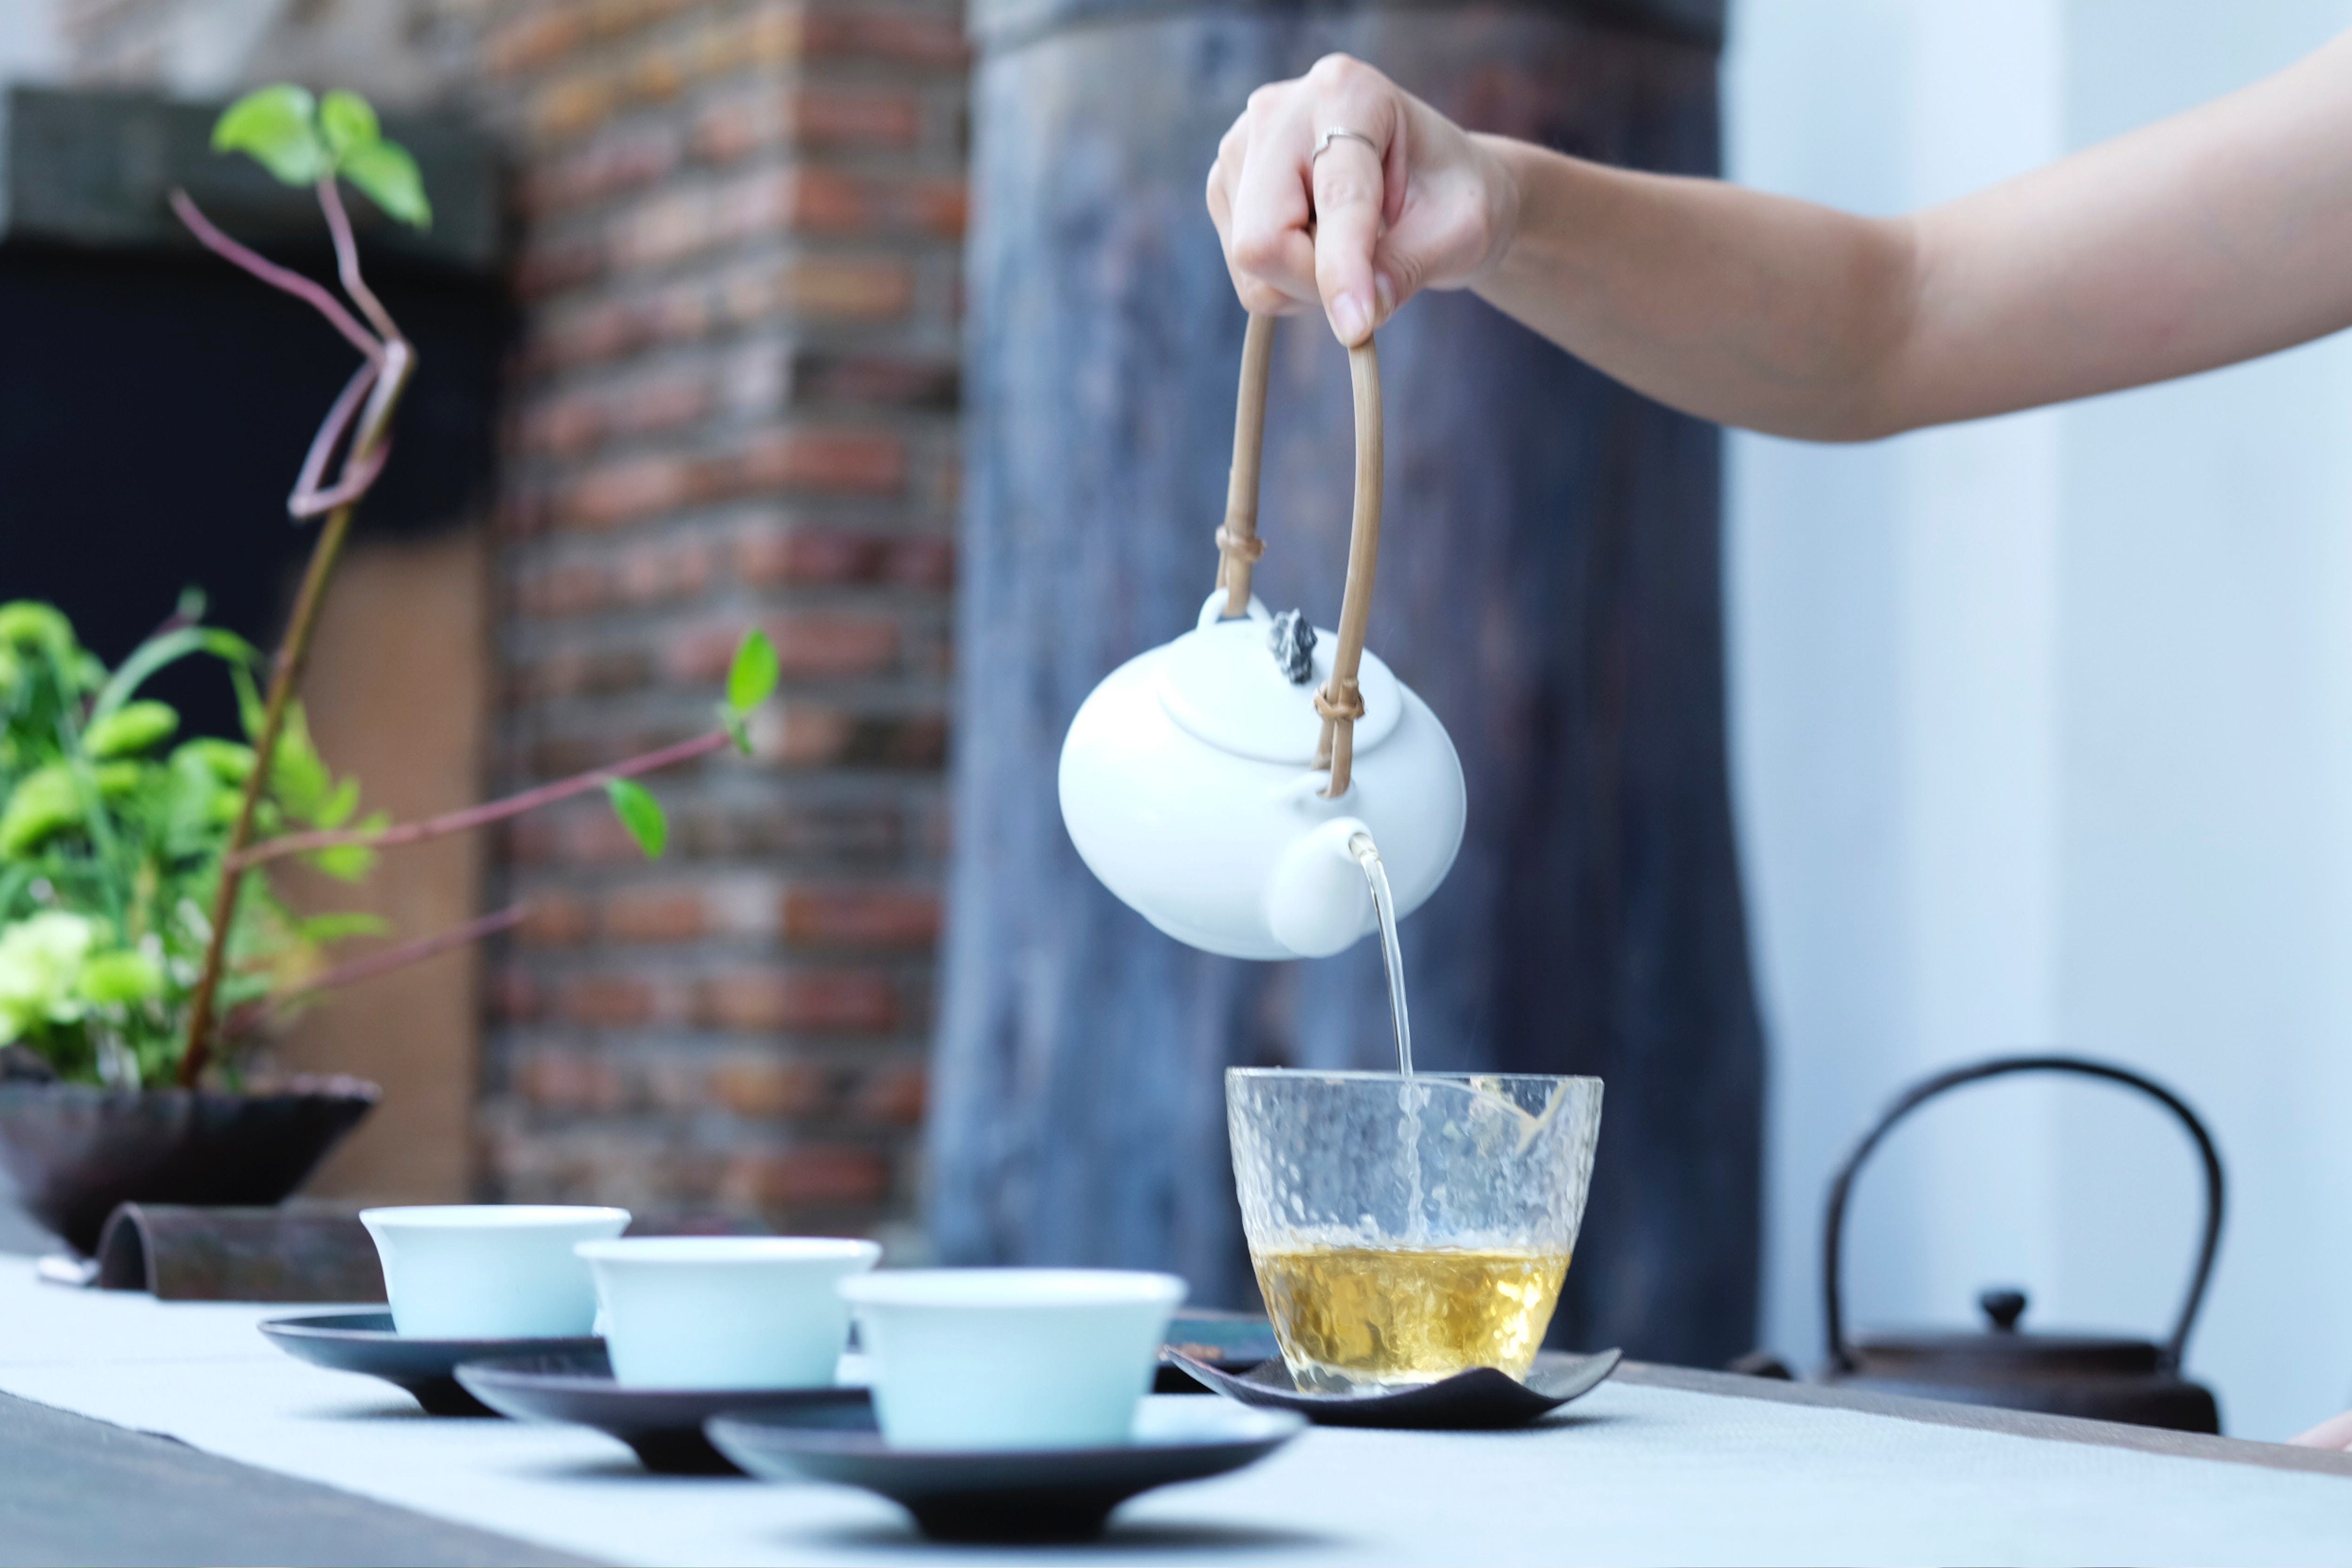 Горячий чай в жару охладит тело, только если в помещении сквозняк или дует кондиционер, считают исследователи